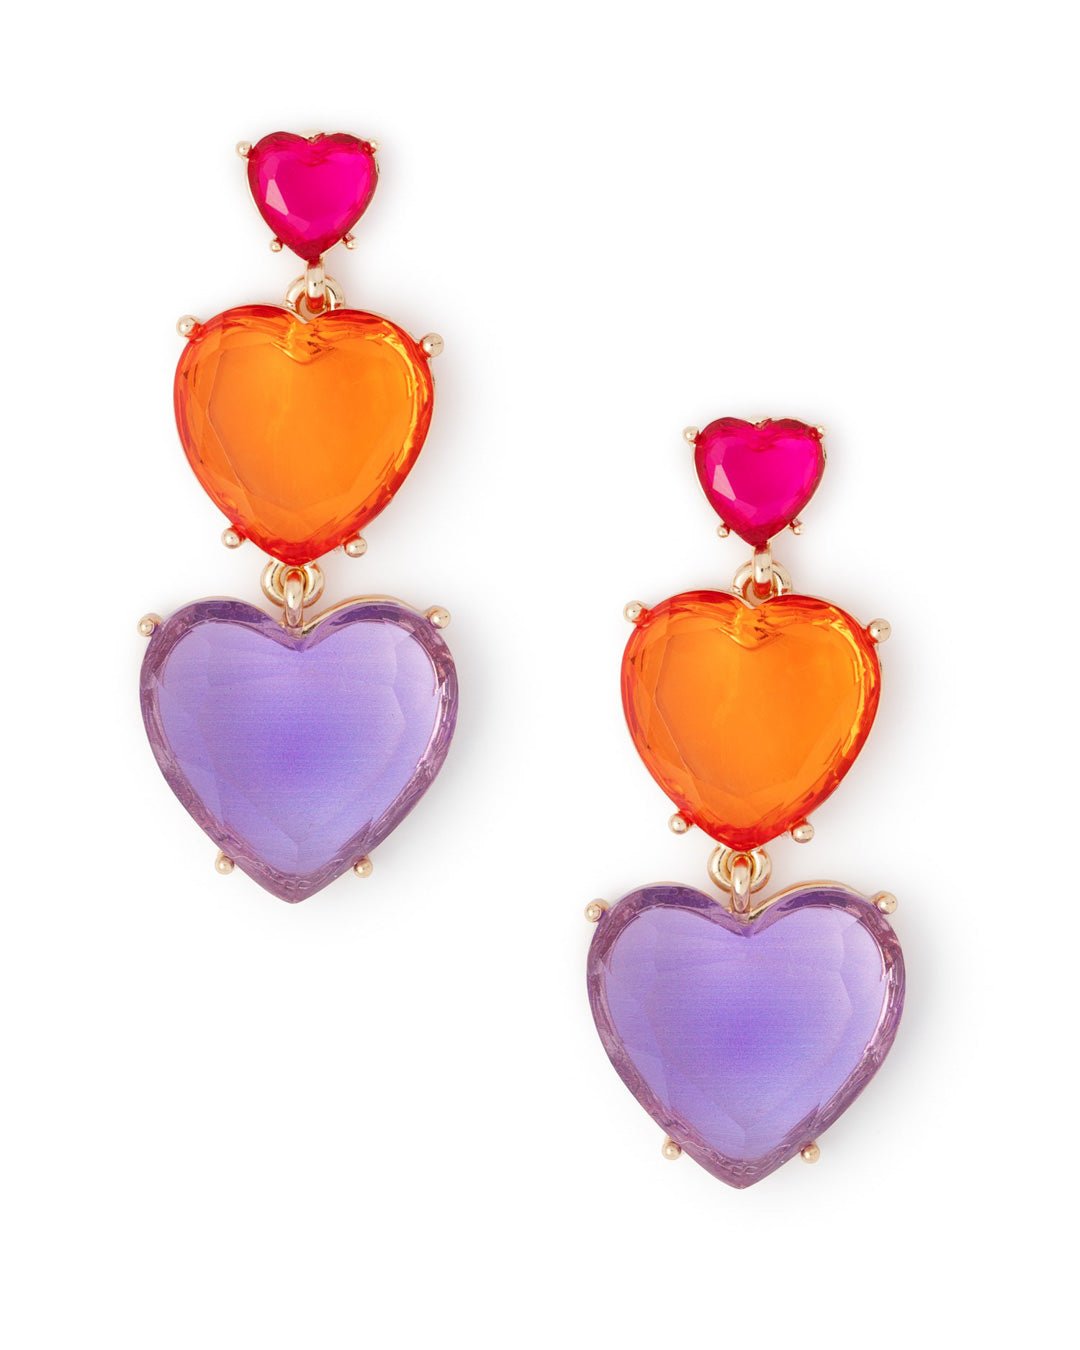 Orecchini in metallo pendenti con tre cuori in resina trasparente rosa, arancio e viola - Mya Accessories